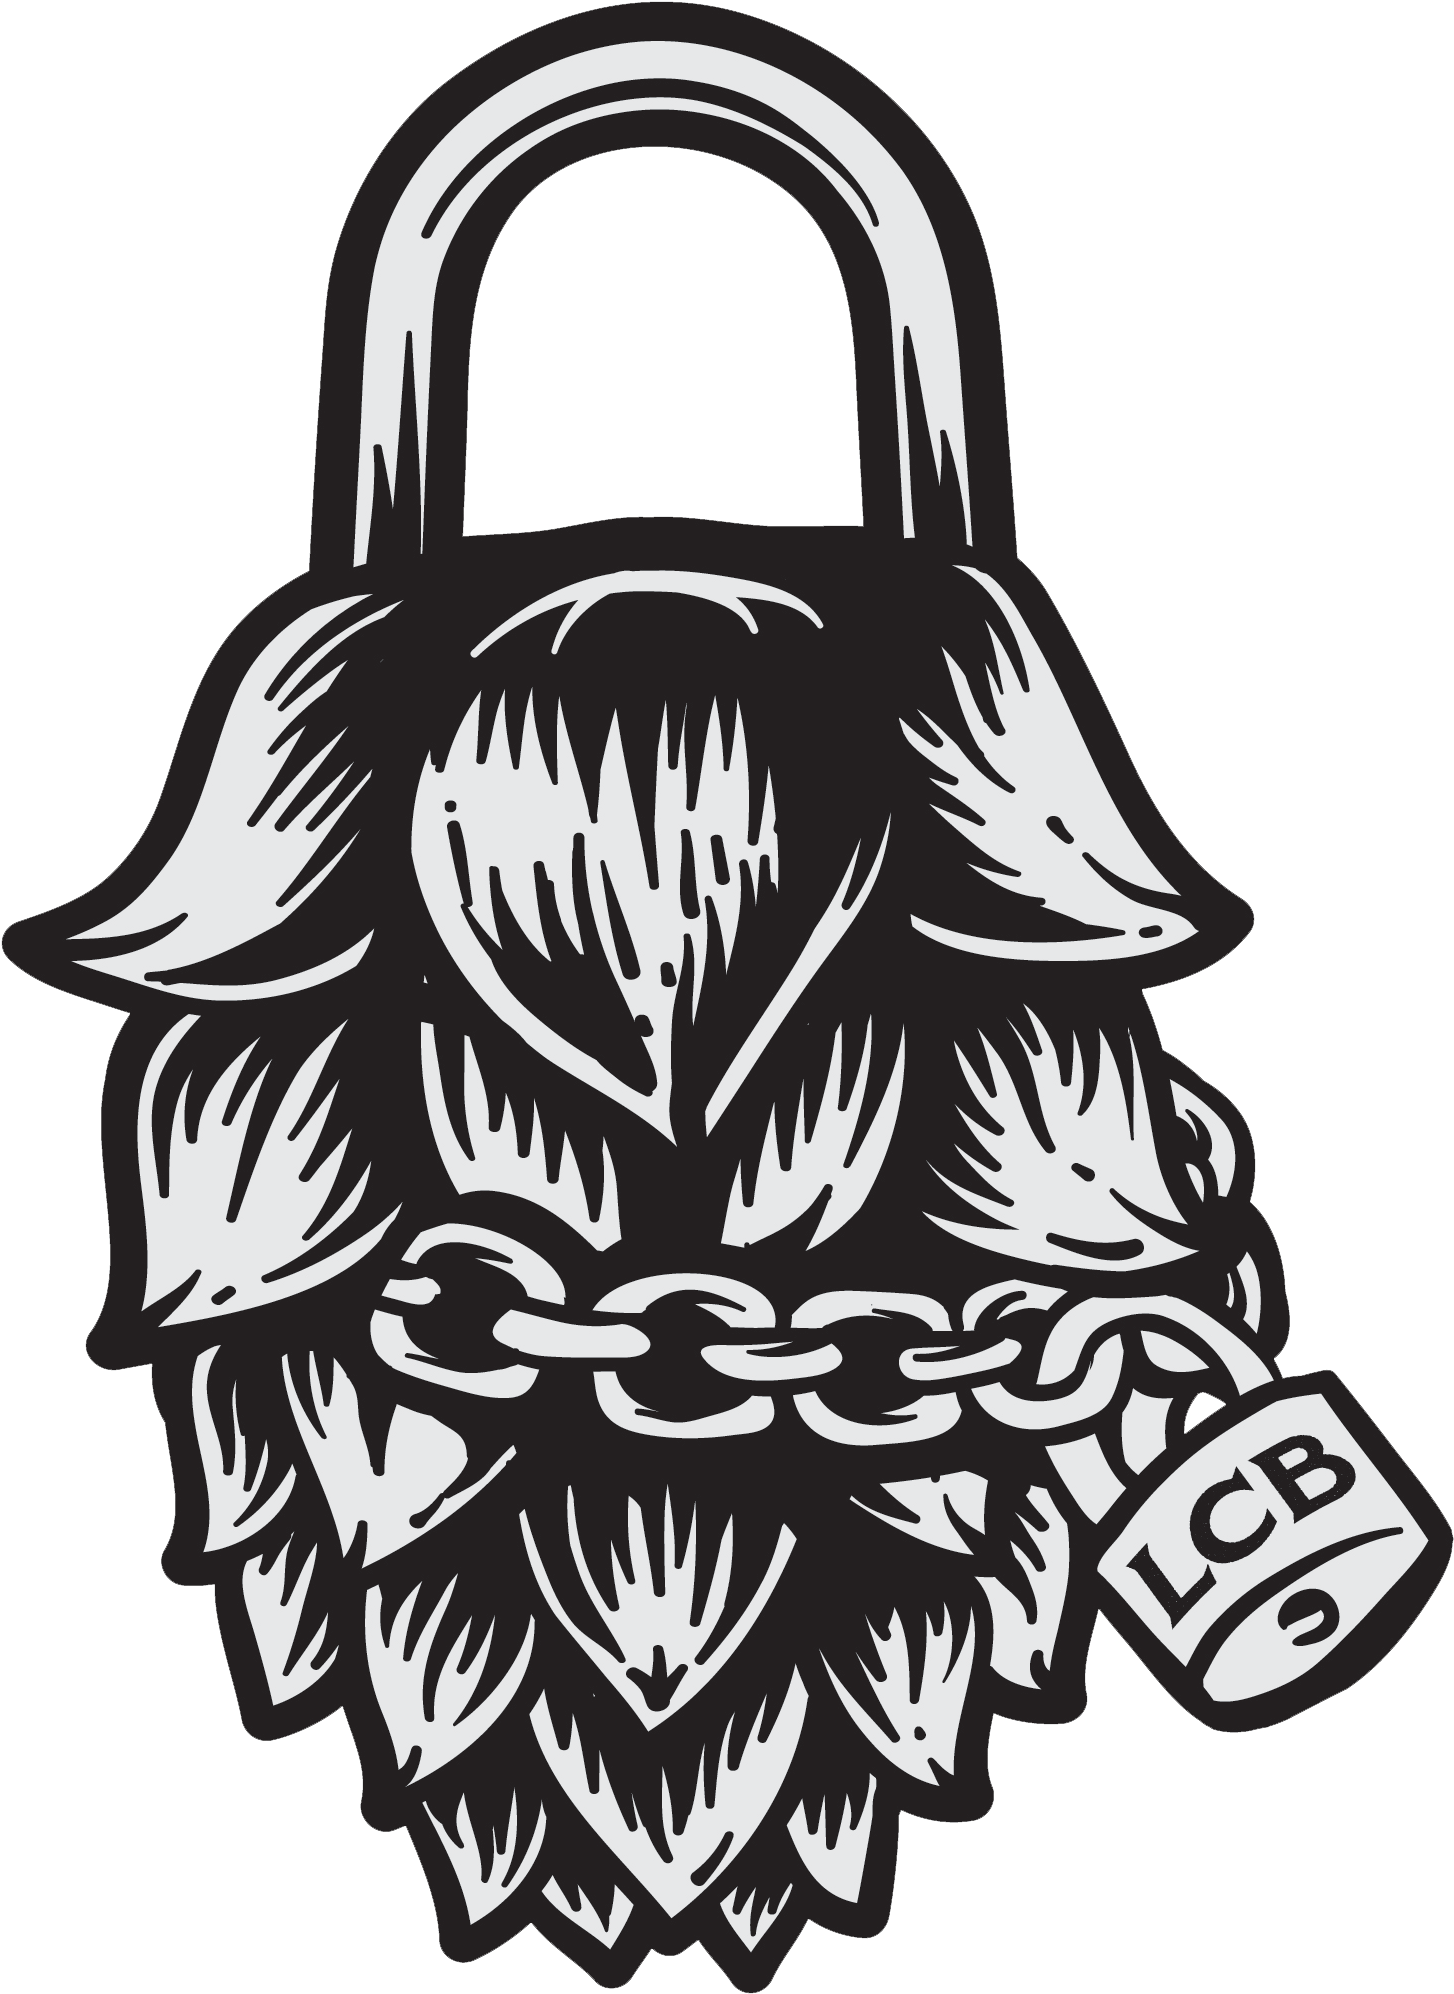 Facebook Page - Lock City Brewing Logo (1762x2134)